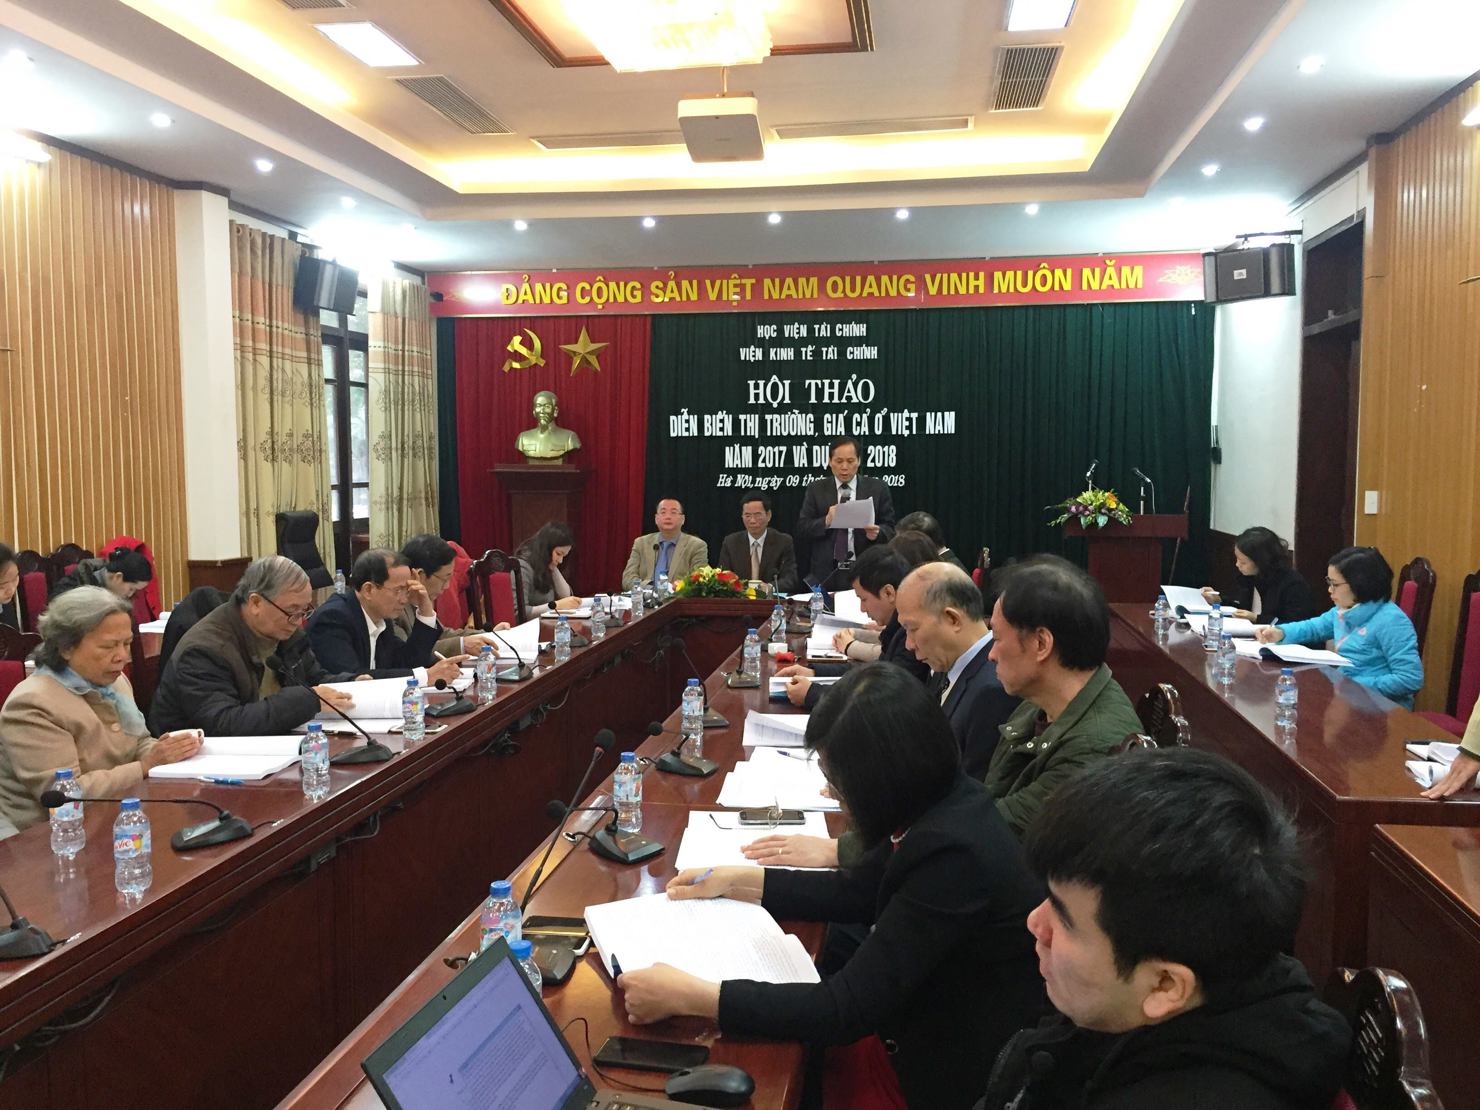 Toàn cảnh Hội thảo Diễn biến thị trường, giá cả ở Việt Nam năm 2017 và dự báo năm 2018  do Viện Kinh tế - Tài chính (Học viện Tài chính) phối hợp với Cục Quản lý Giá (Bộ Tài chính) tổ chức sáng ngày 9/1/2018.